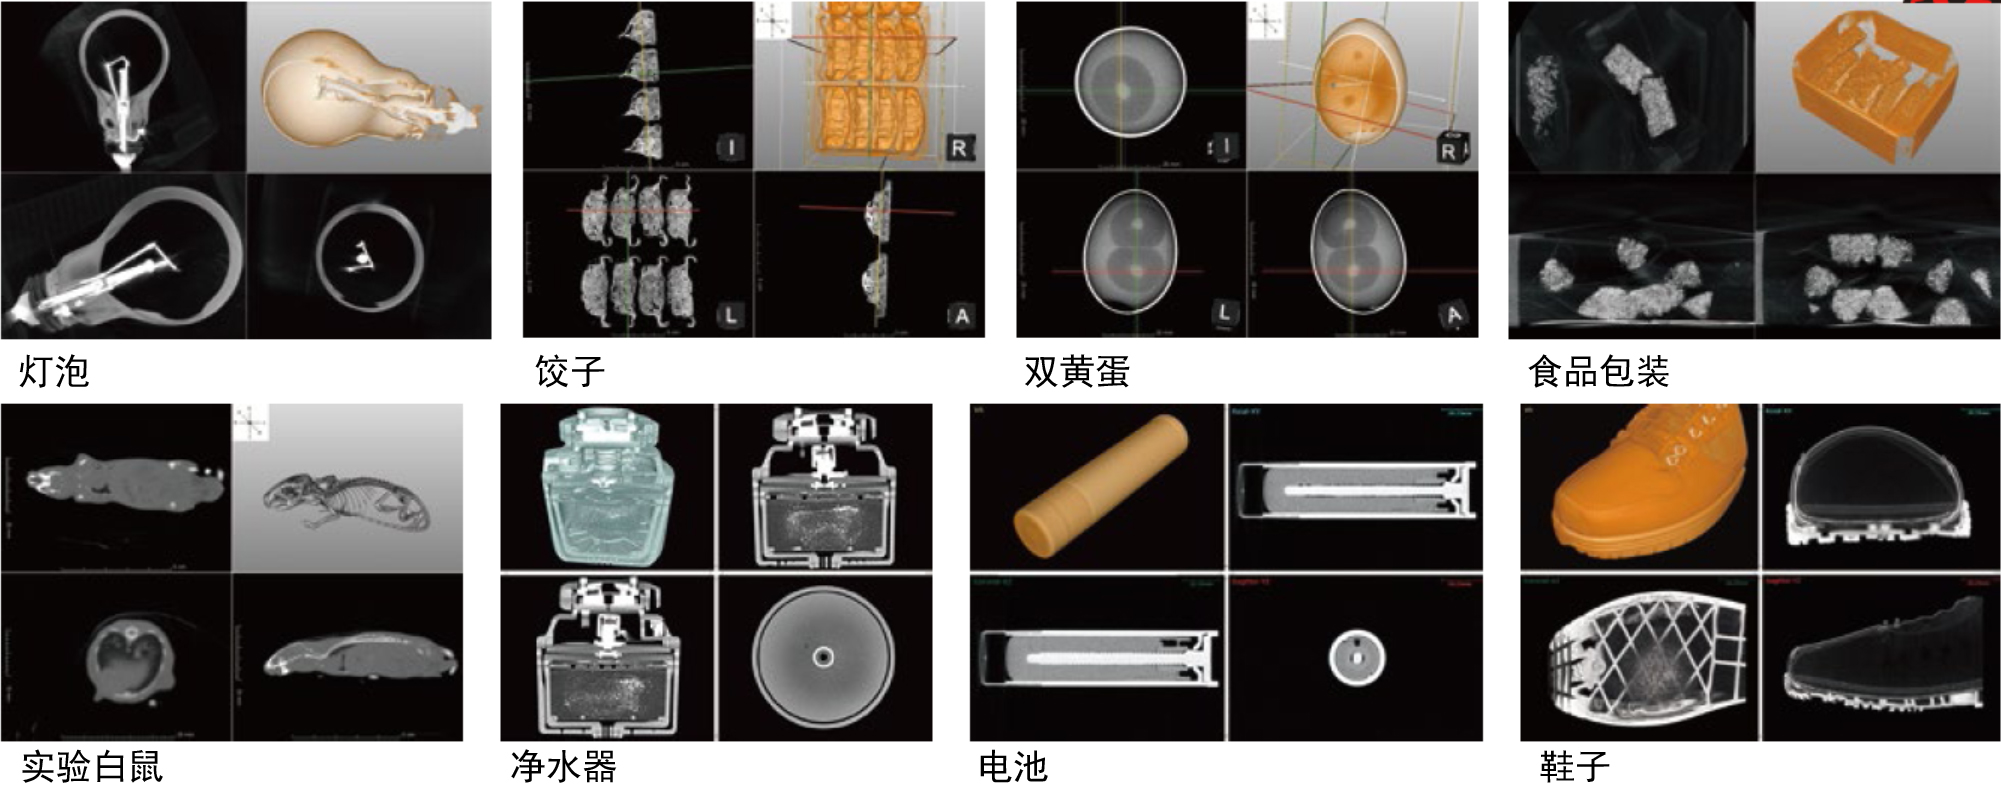 桌面型X射线三维扫描CT-3D-L日本进口